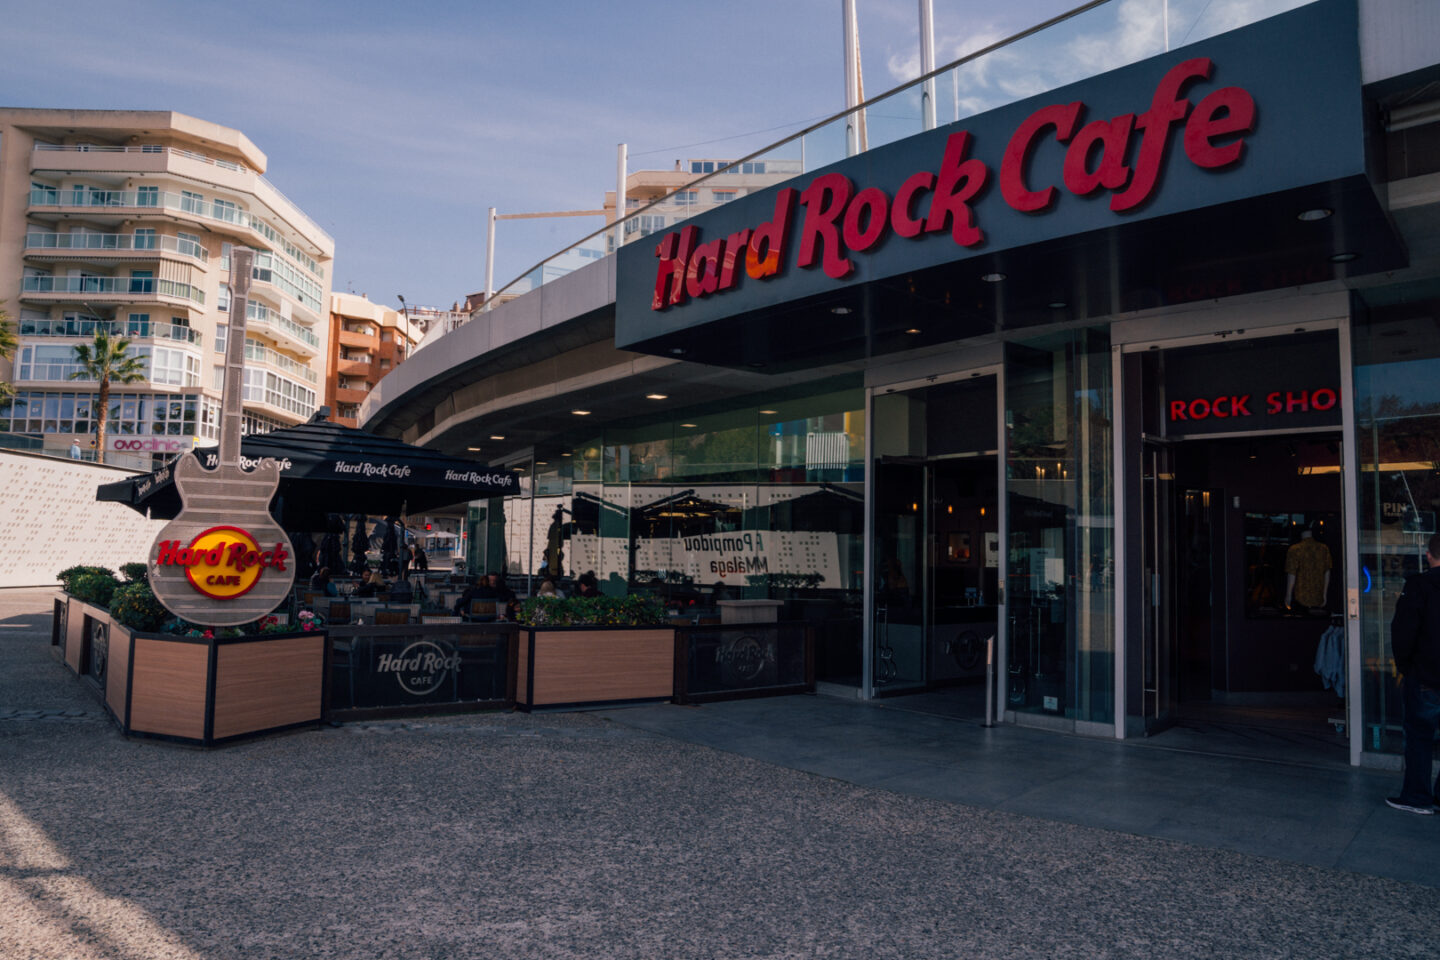 hard rock cafe in Malaga, Spain